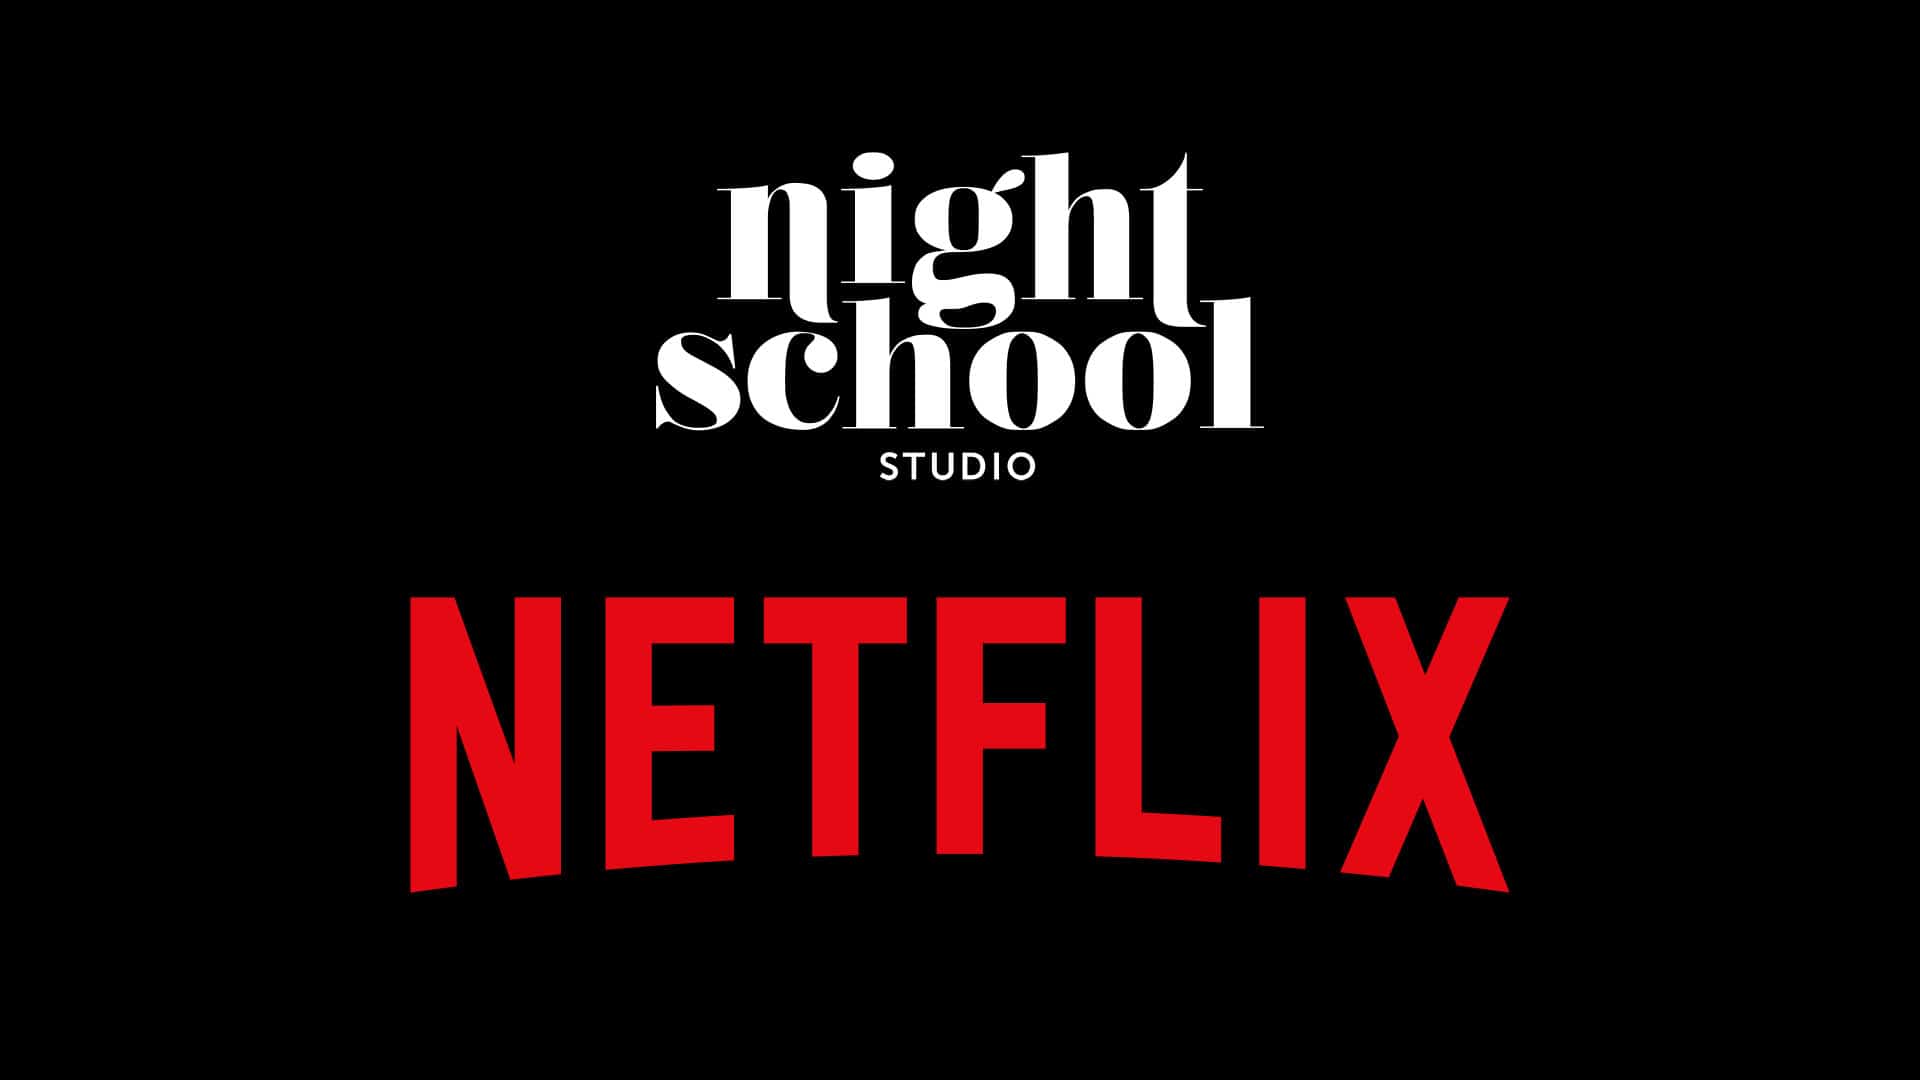 Oxenfree developer Night School Studio acquired by Netflix